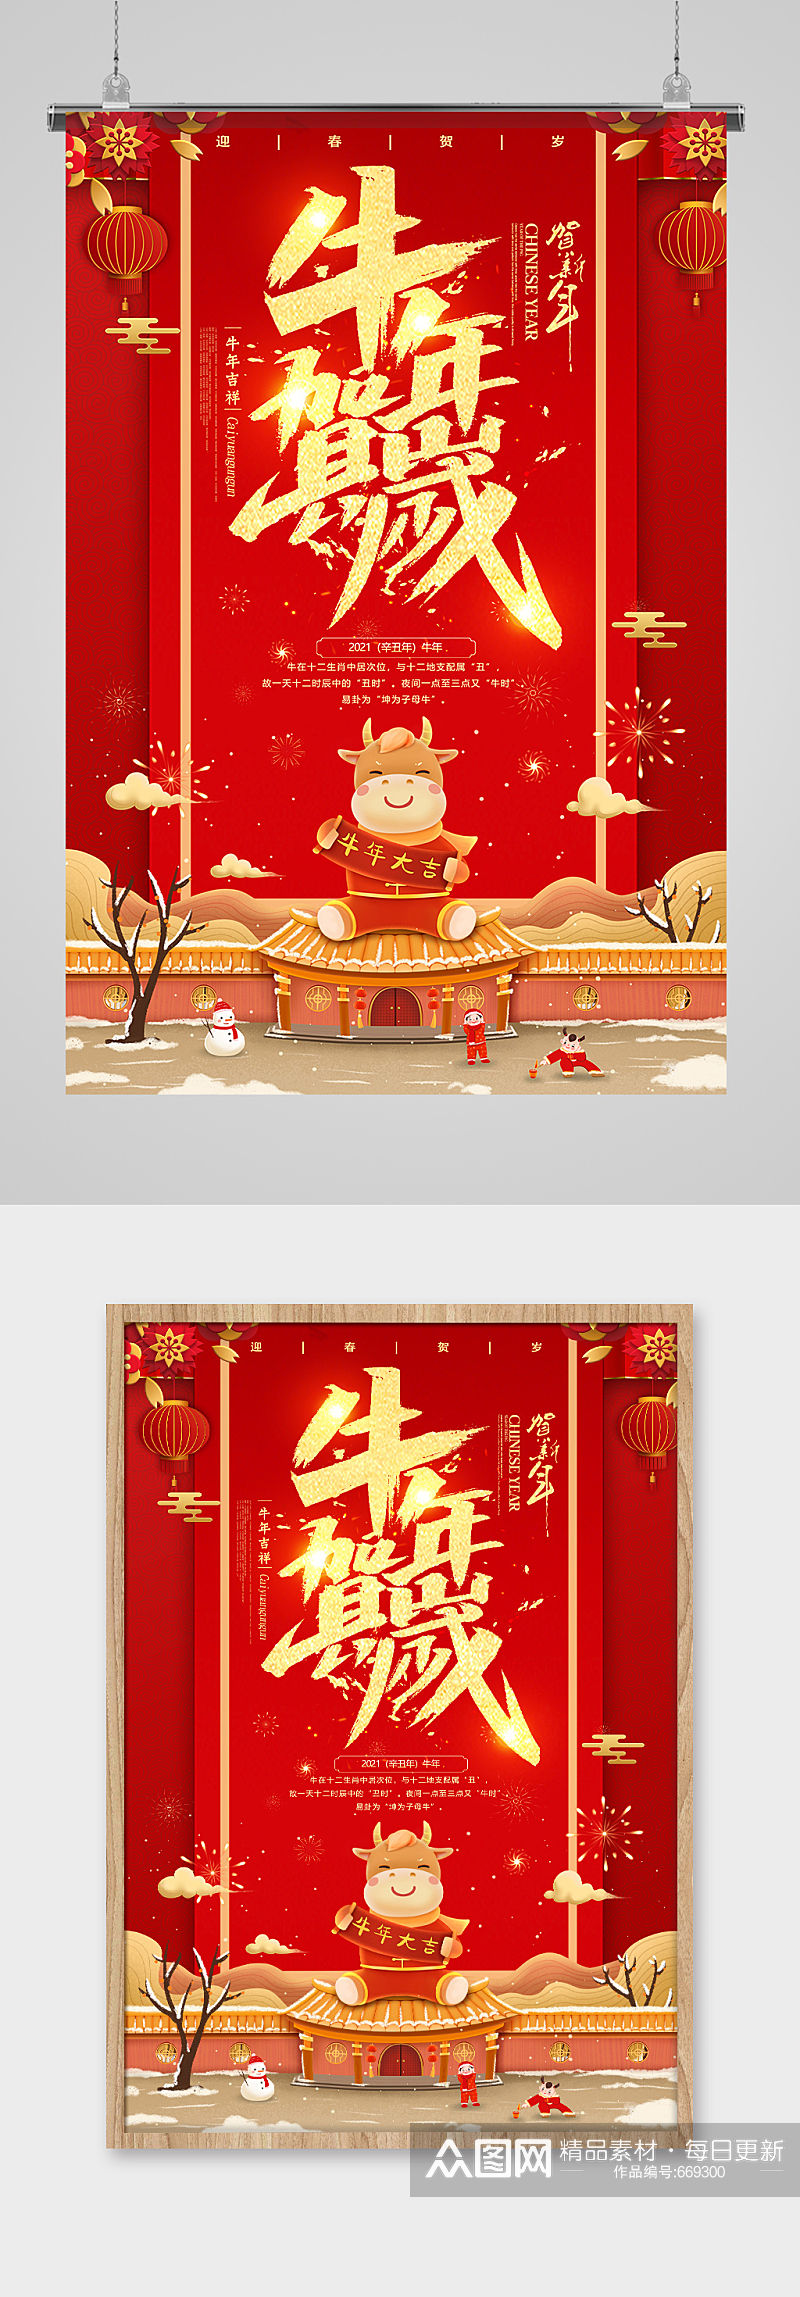 中国红贺新年牛年贺岁海报素材